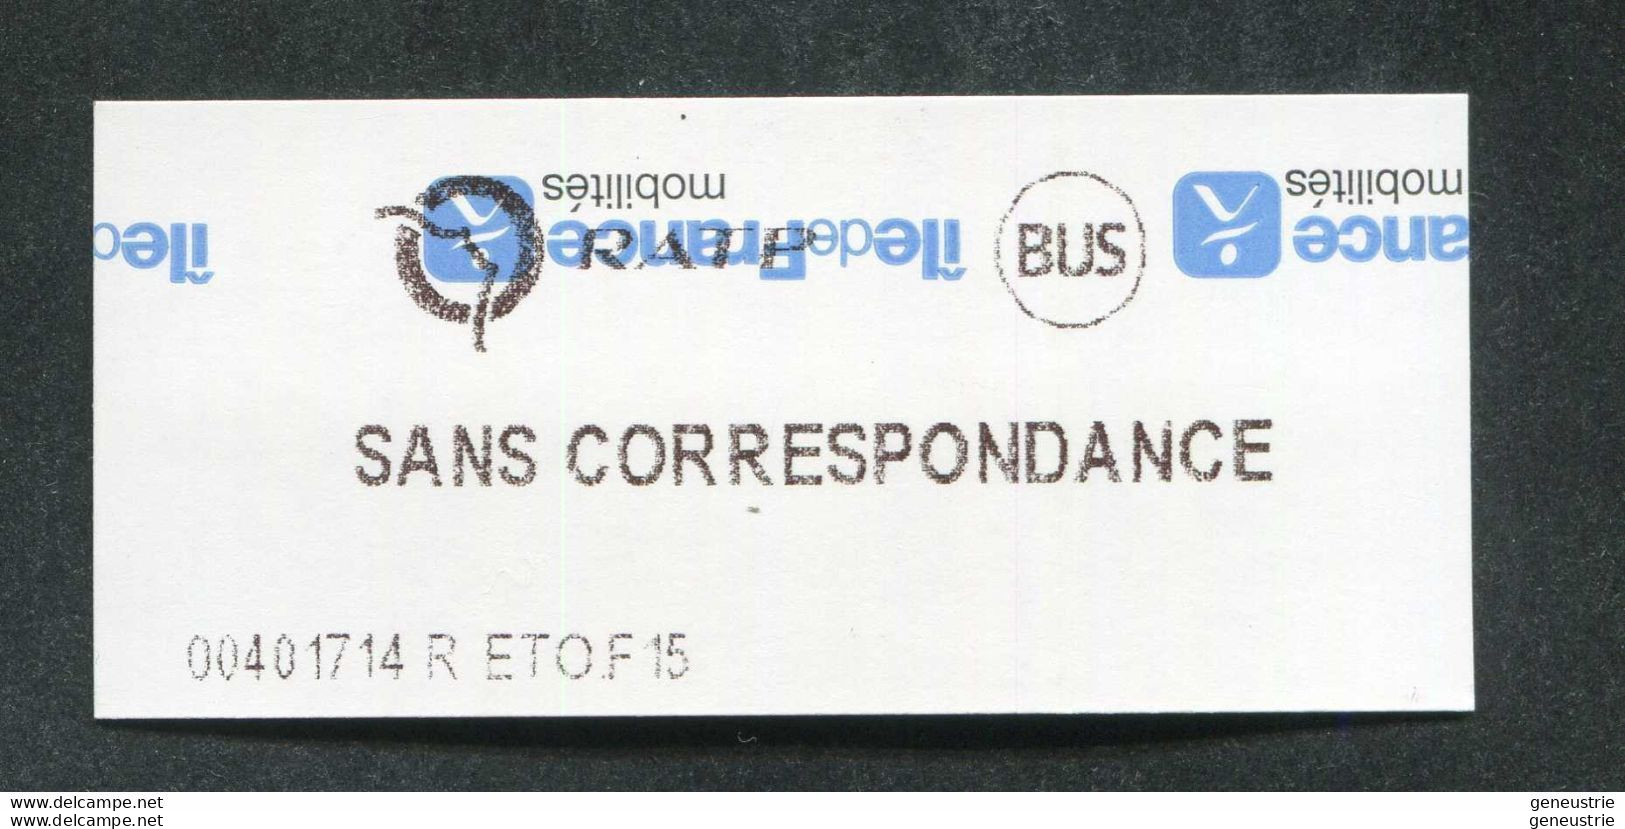 Impression Inversée ! Ticket De Métro Et Bus De Paris Neuf "Sans Correspondance" (Station Etoile) RATP - Europe